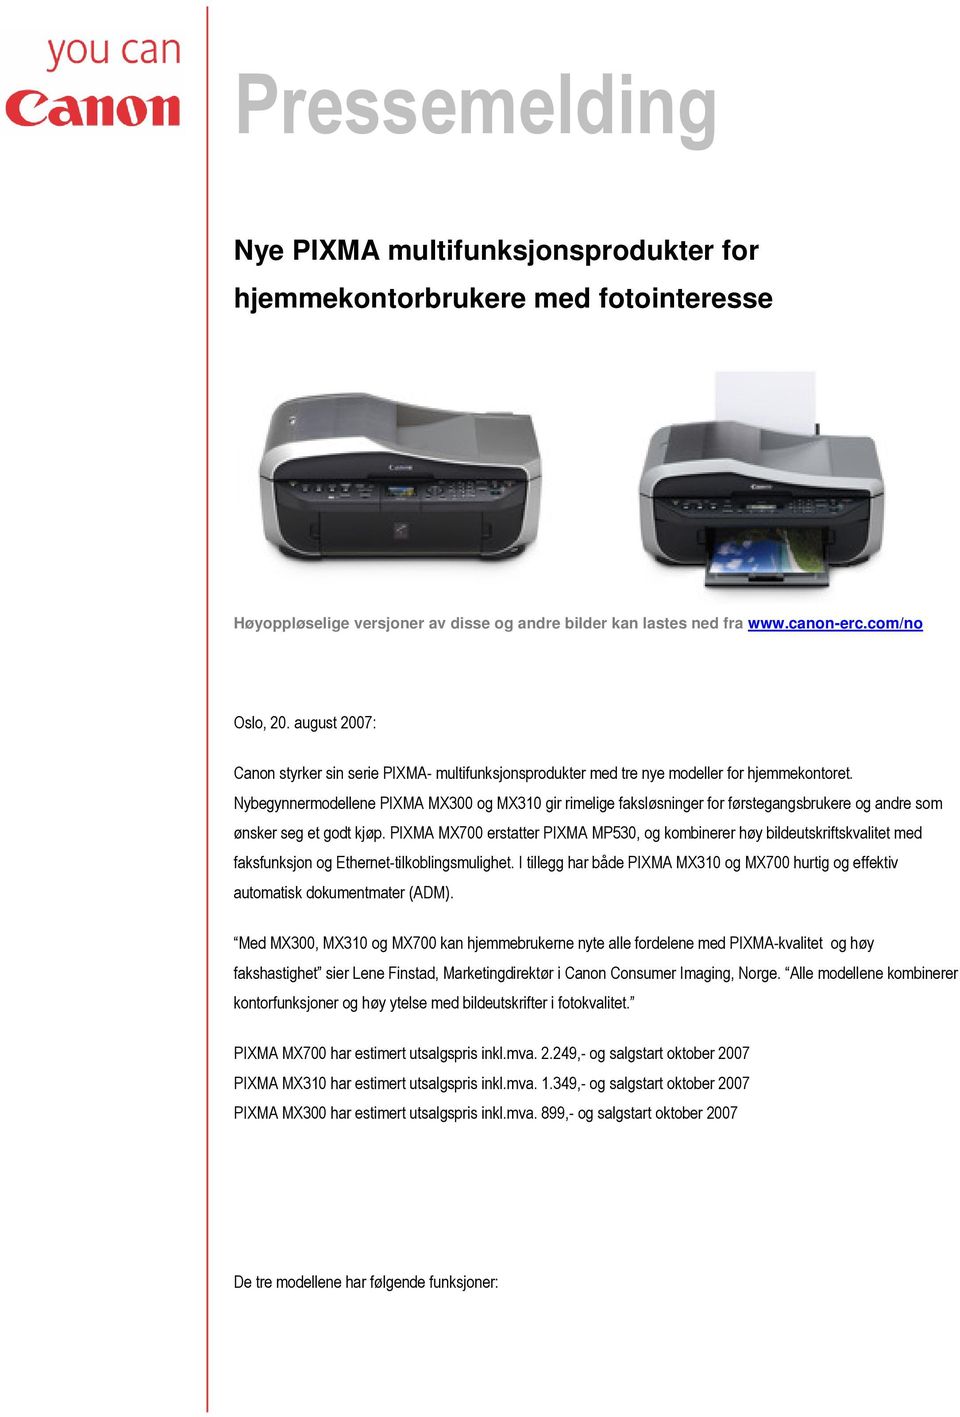 Nybegynnermodellene PIXMA MX300 og MX310 gir rimelige faksløsninger for førstegangsbrukere og andre som ønsker seg et godt kjøp.